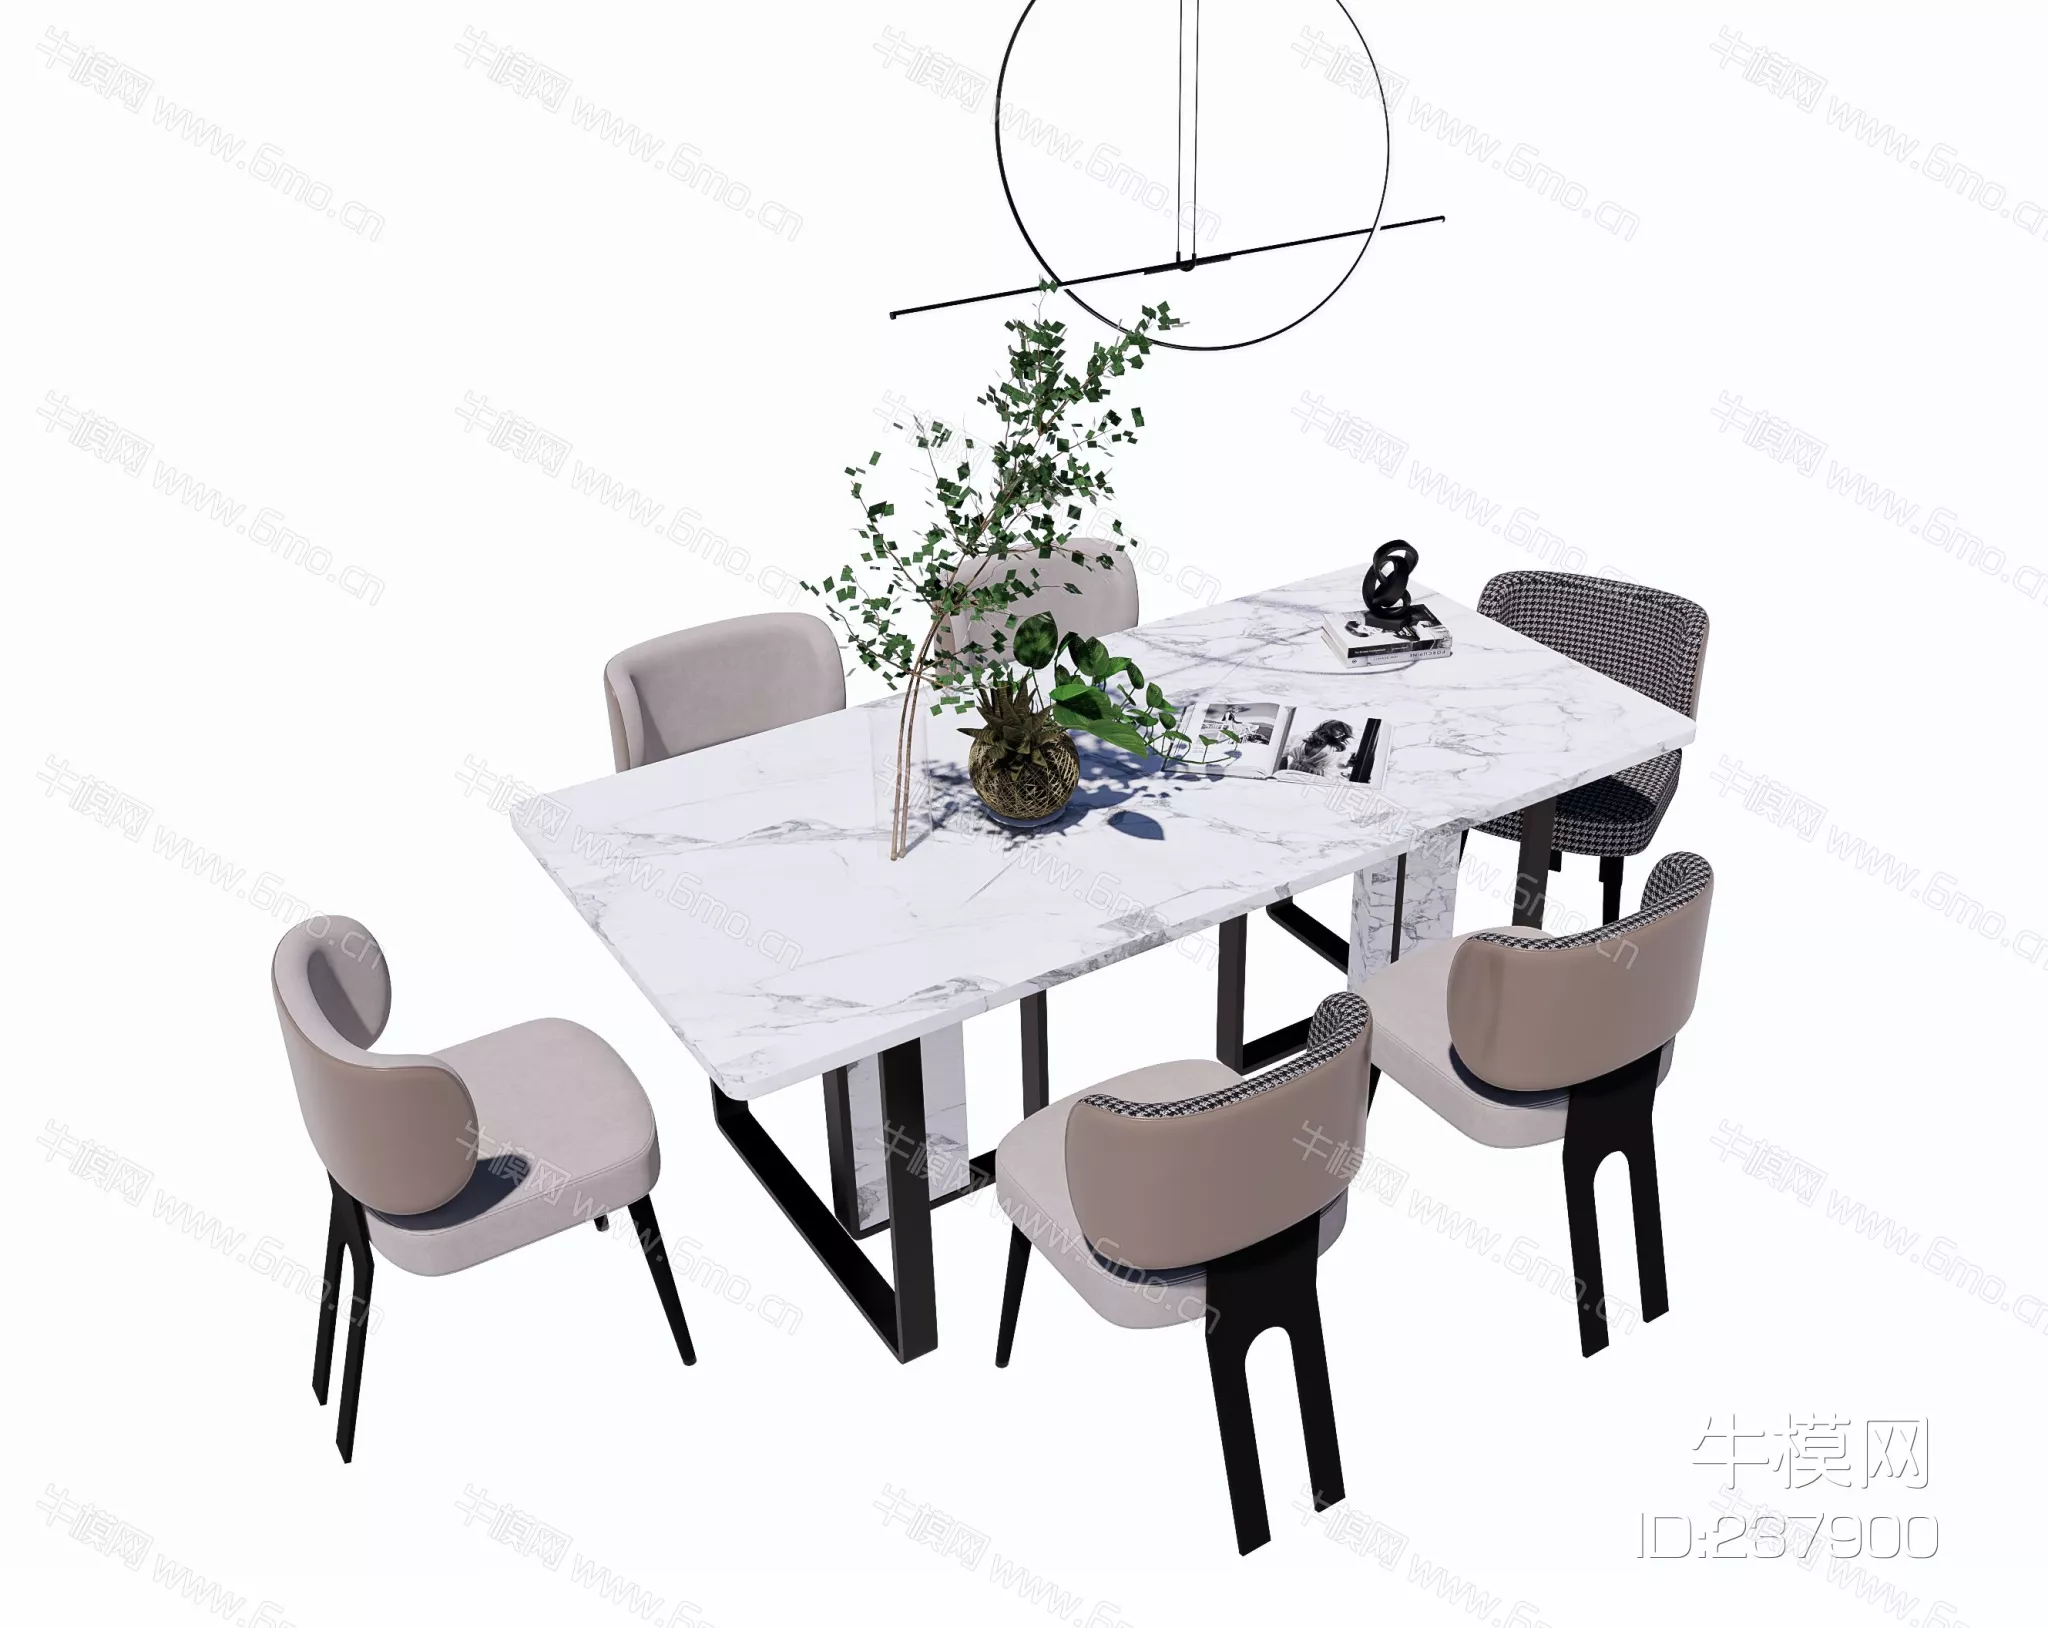 MODERN DINING TABLE SET - SKETCHUP 3D MODEL - ENSCAPE - 237900